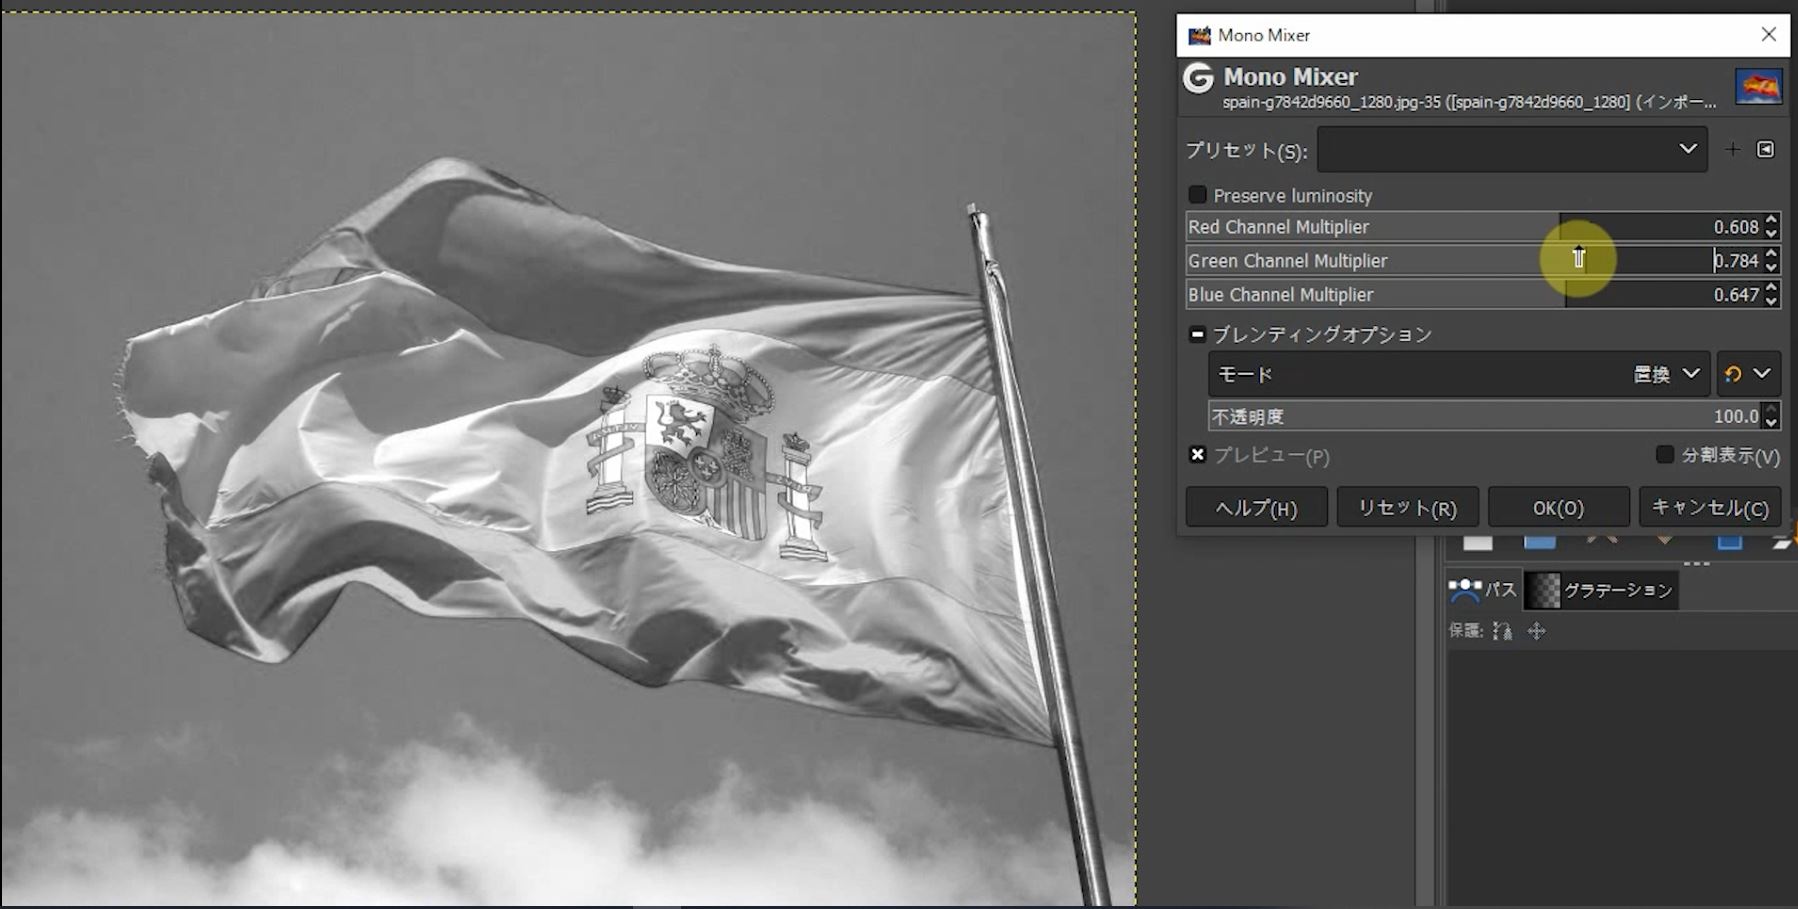 RGBチャンネルで調整したモノクロ写真の方が明るく、くっきりして国旗もつややかです。